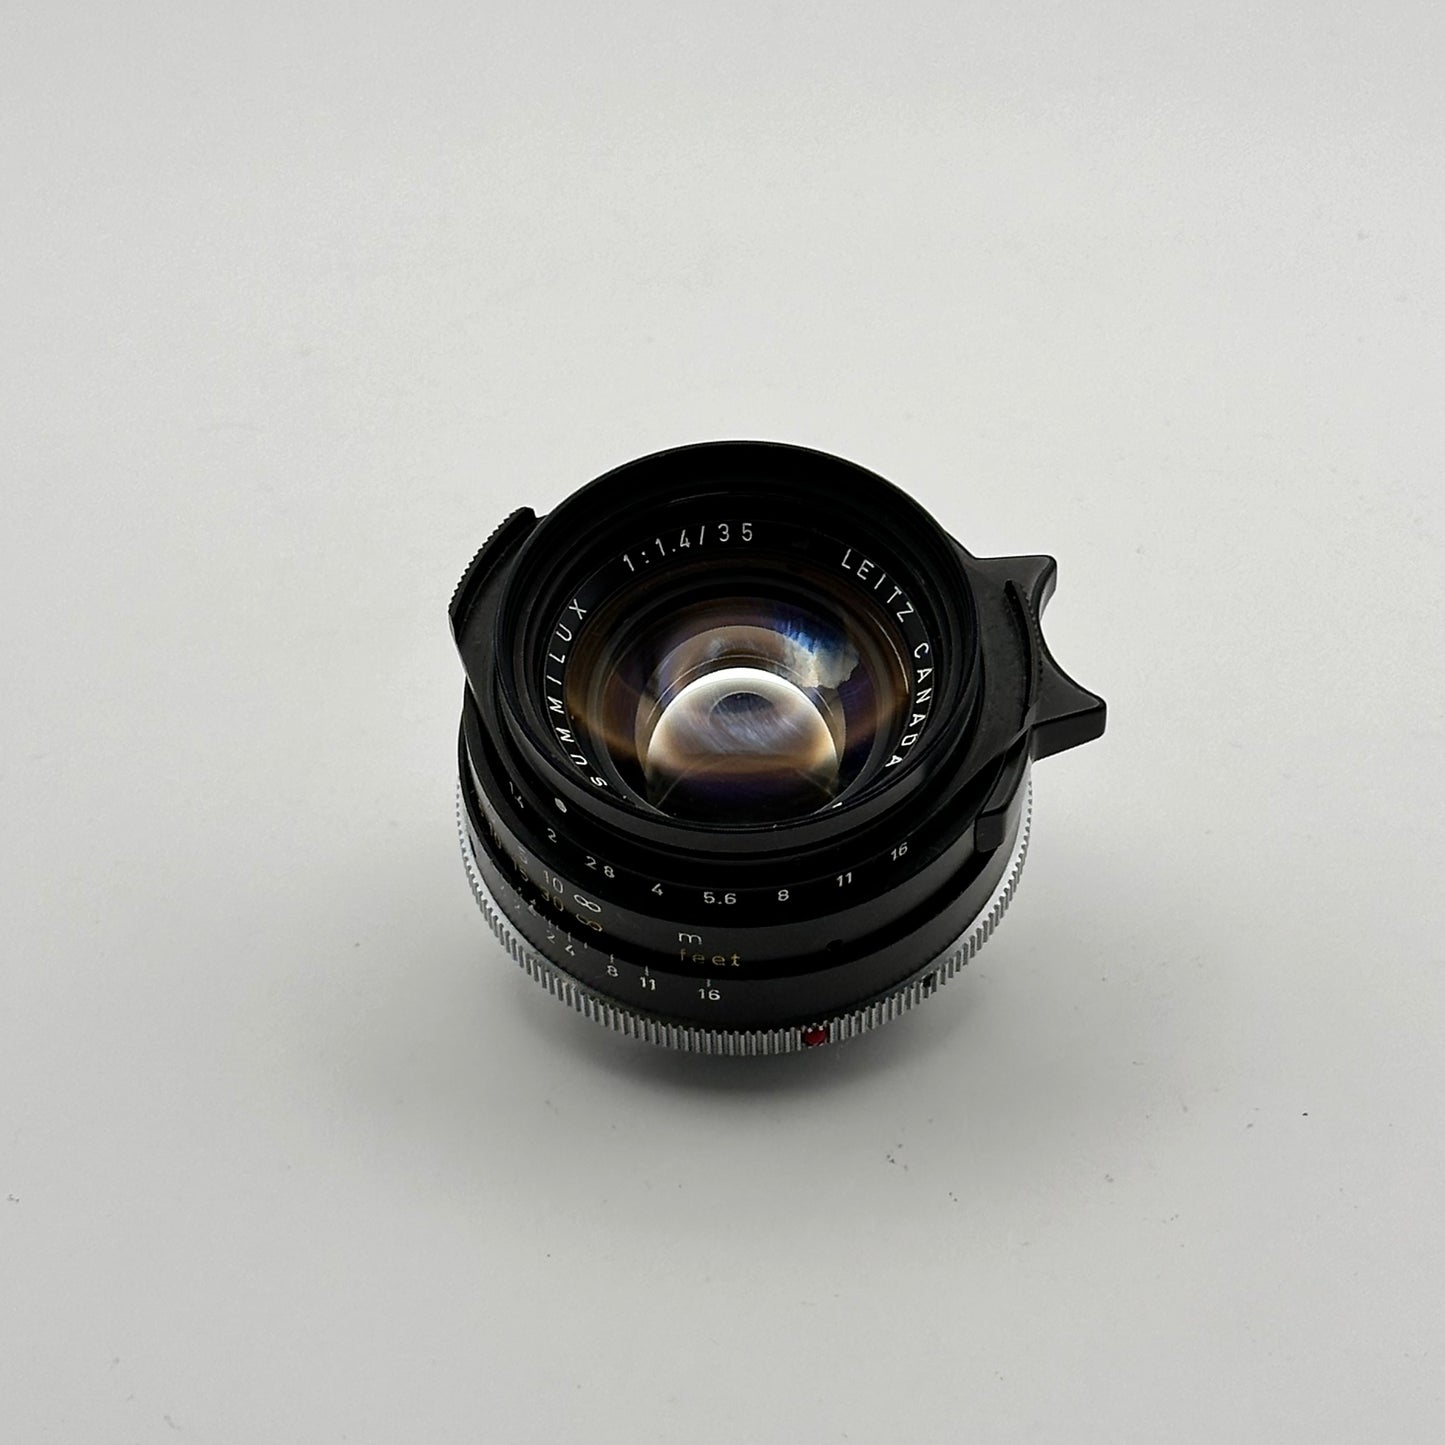 Leica M7 inkl. OVP & Leica Summilux 35mm f/1.4